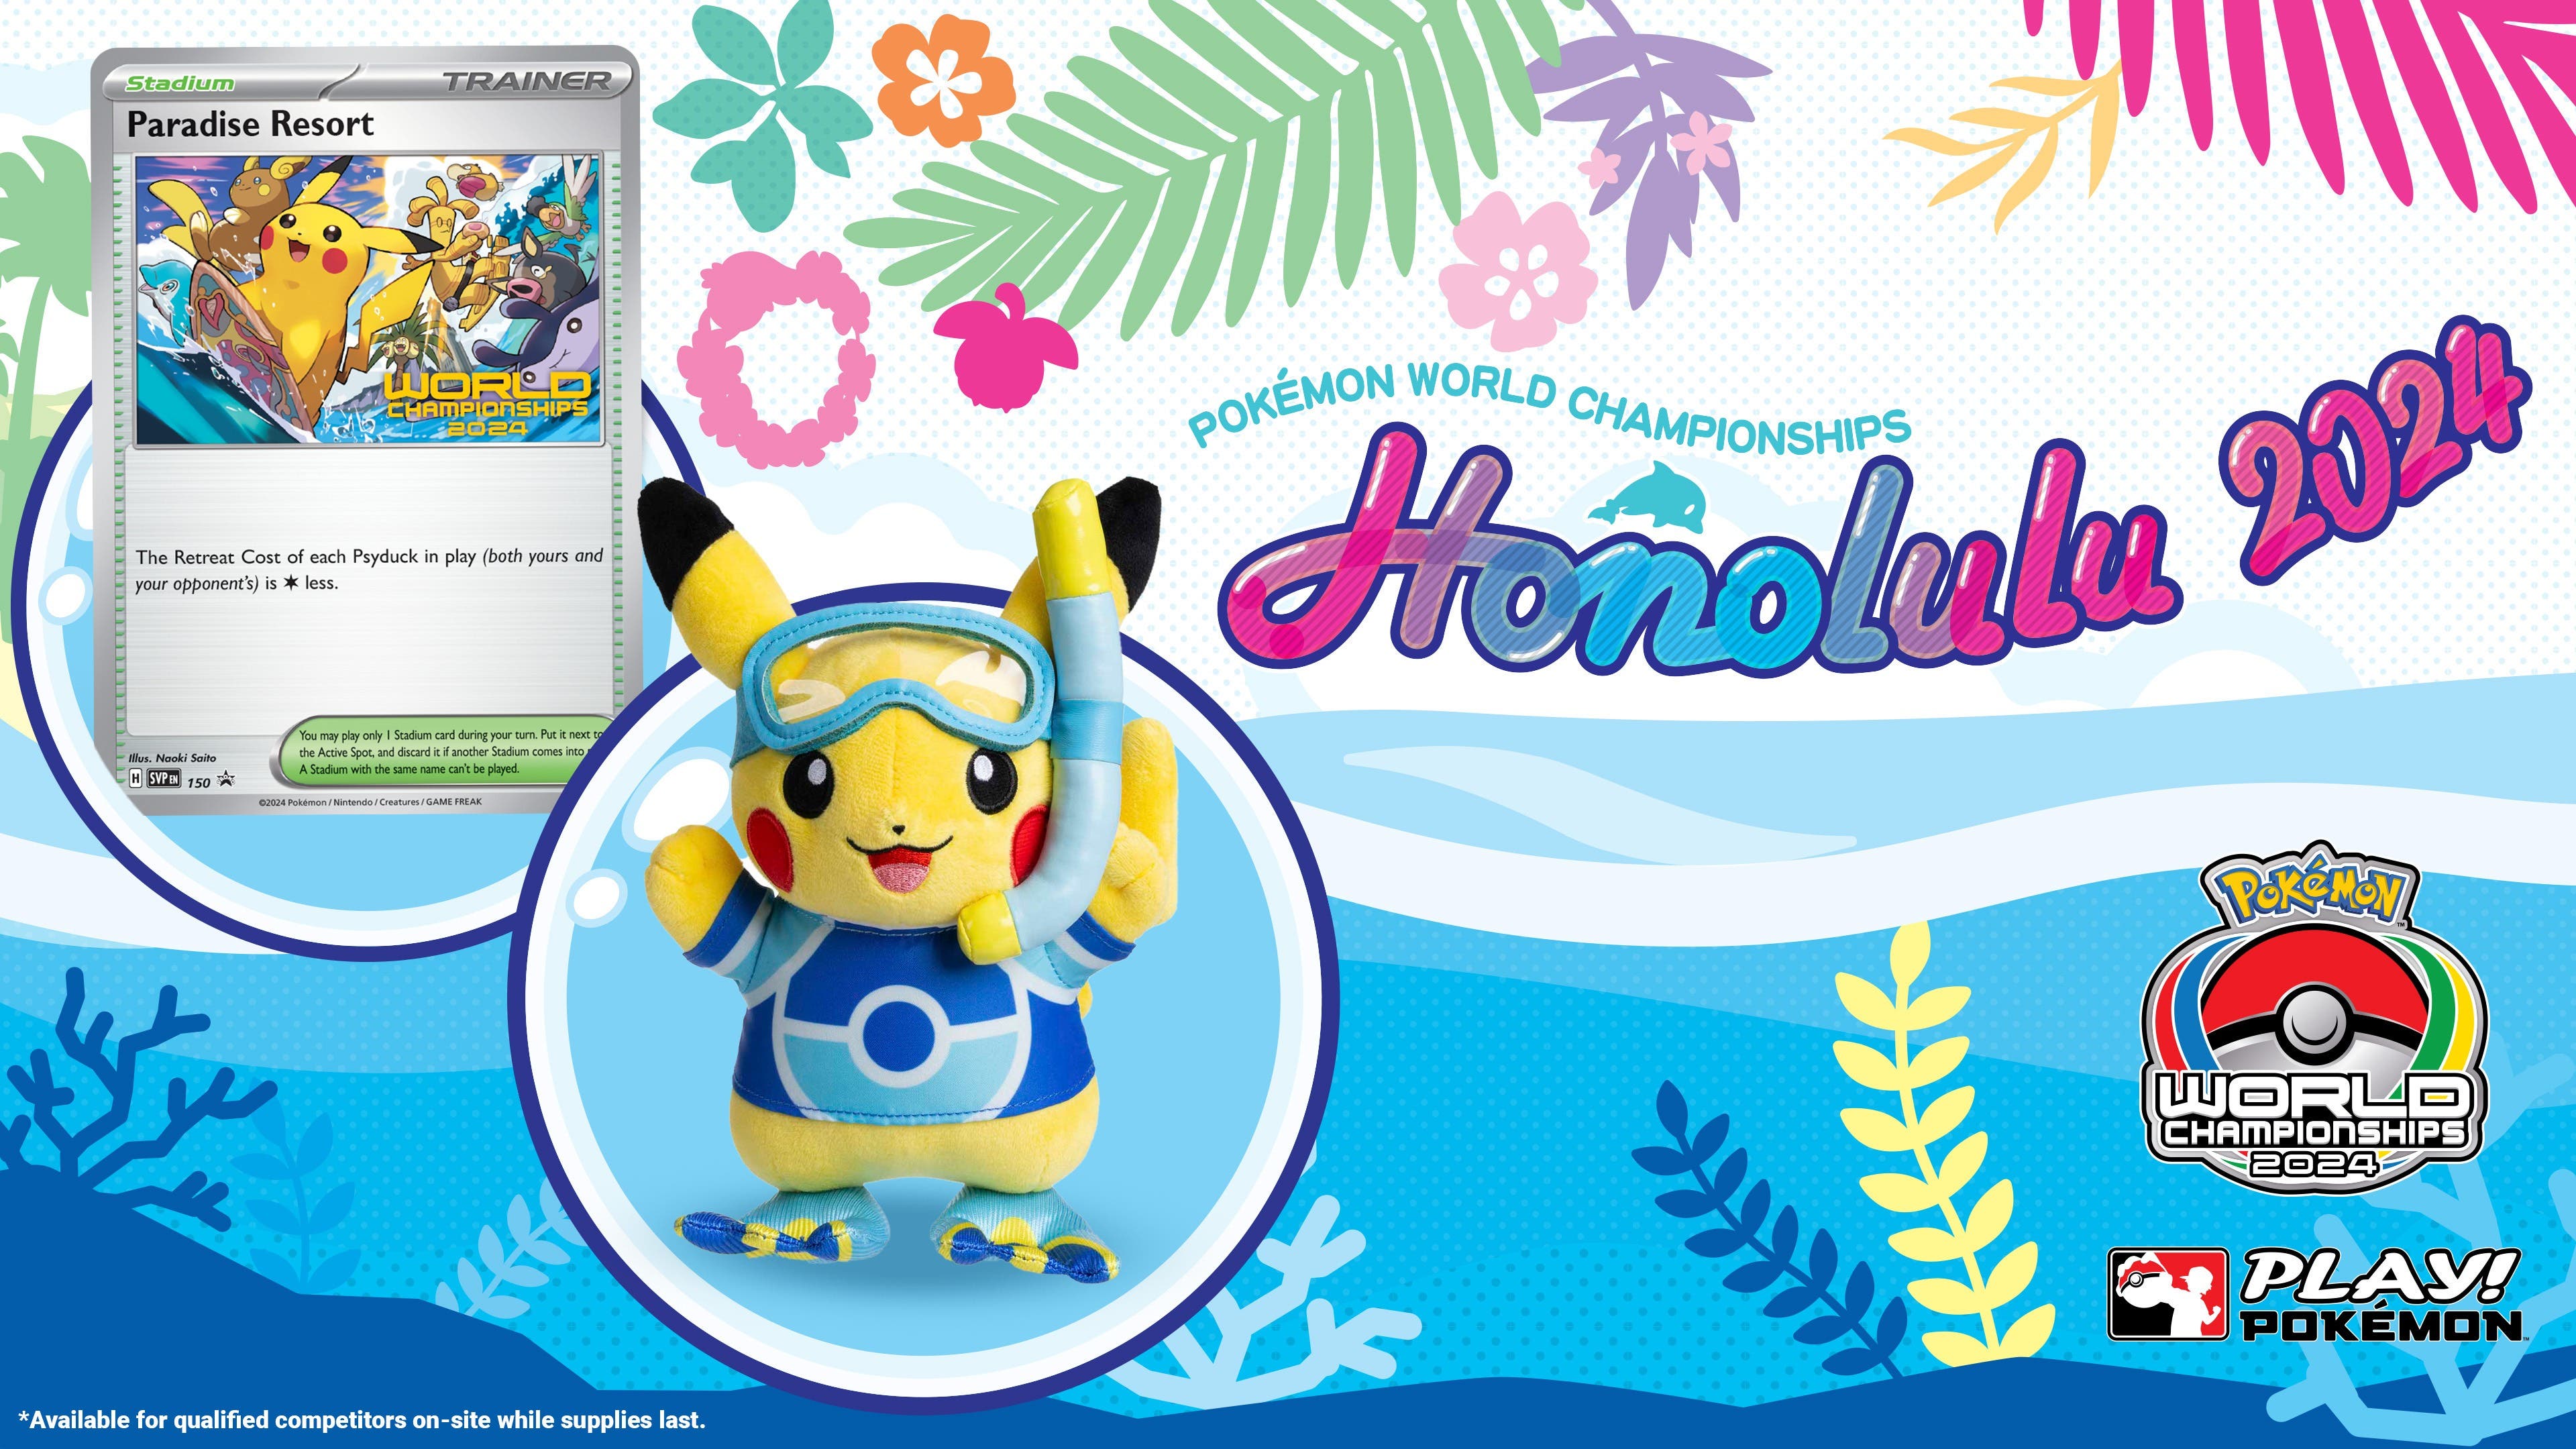 Desvelados el peluche de Pikachu exclusivo y la carta de promoción Complejo Turístico Paraíso para el Campeonato Mundial Pokémon en Honolulu, Hawái